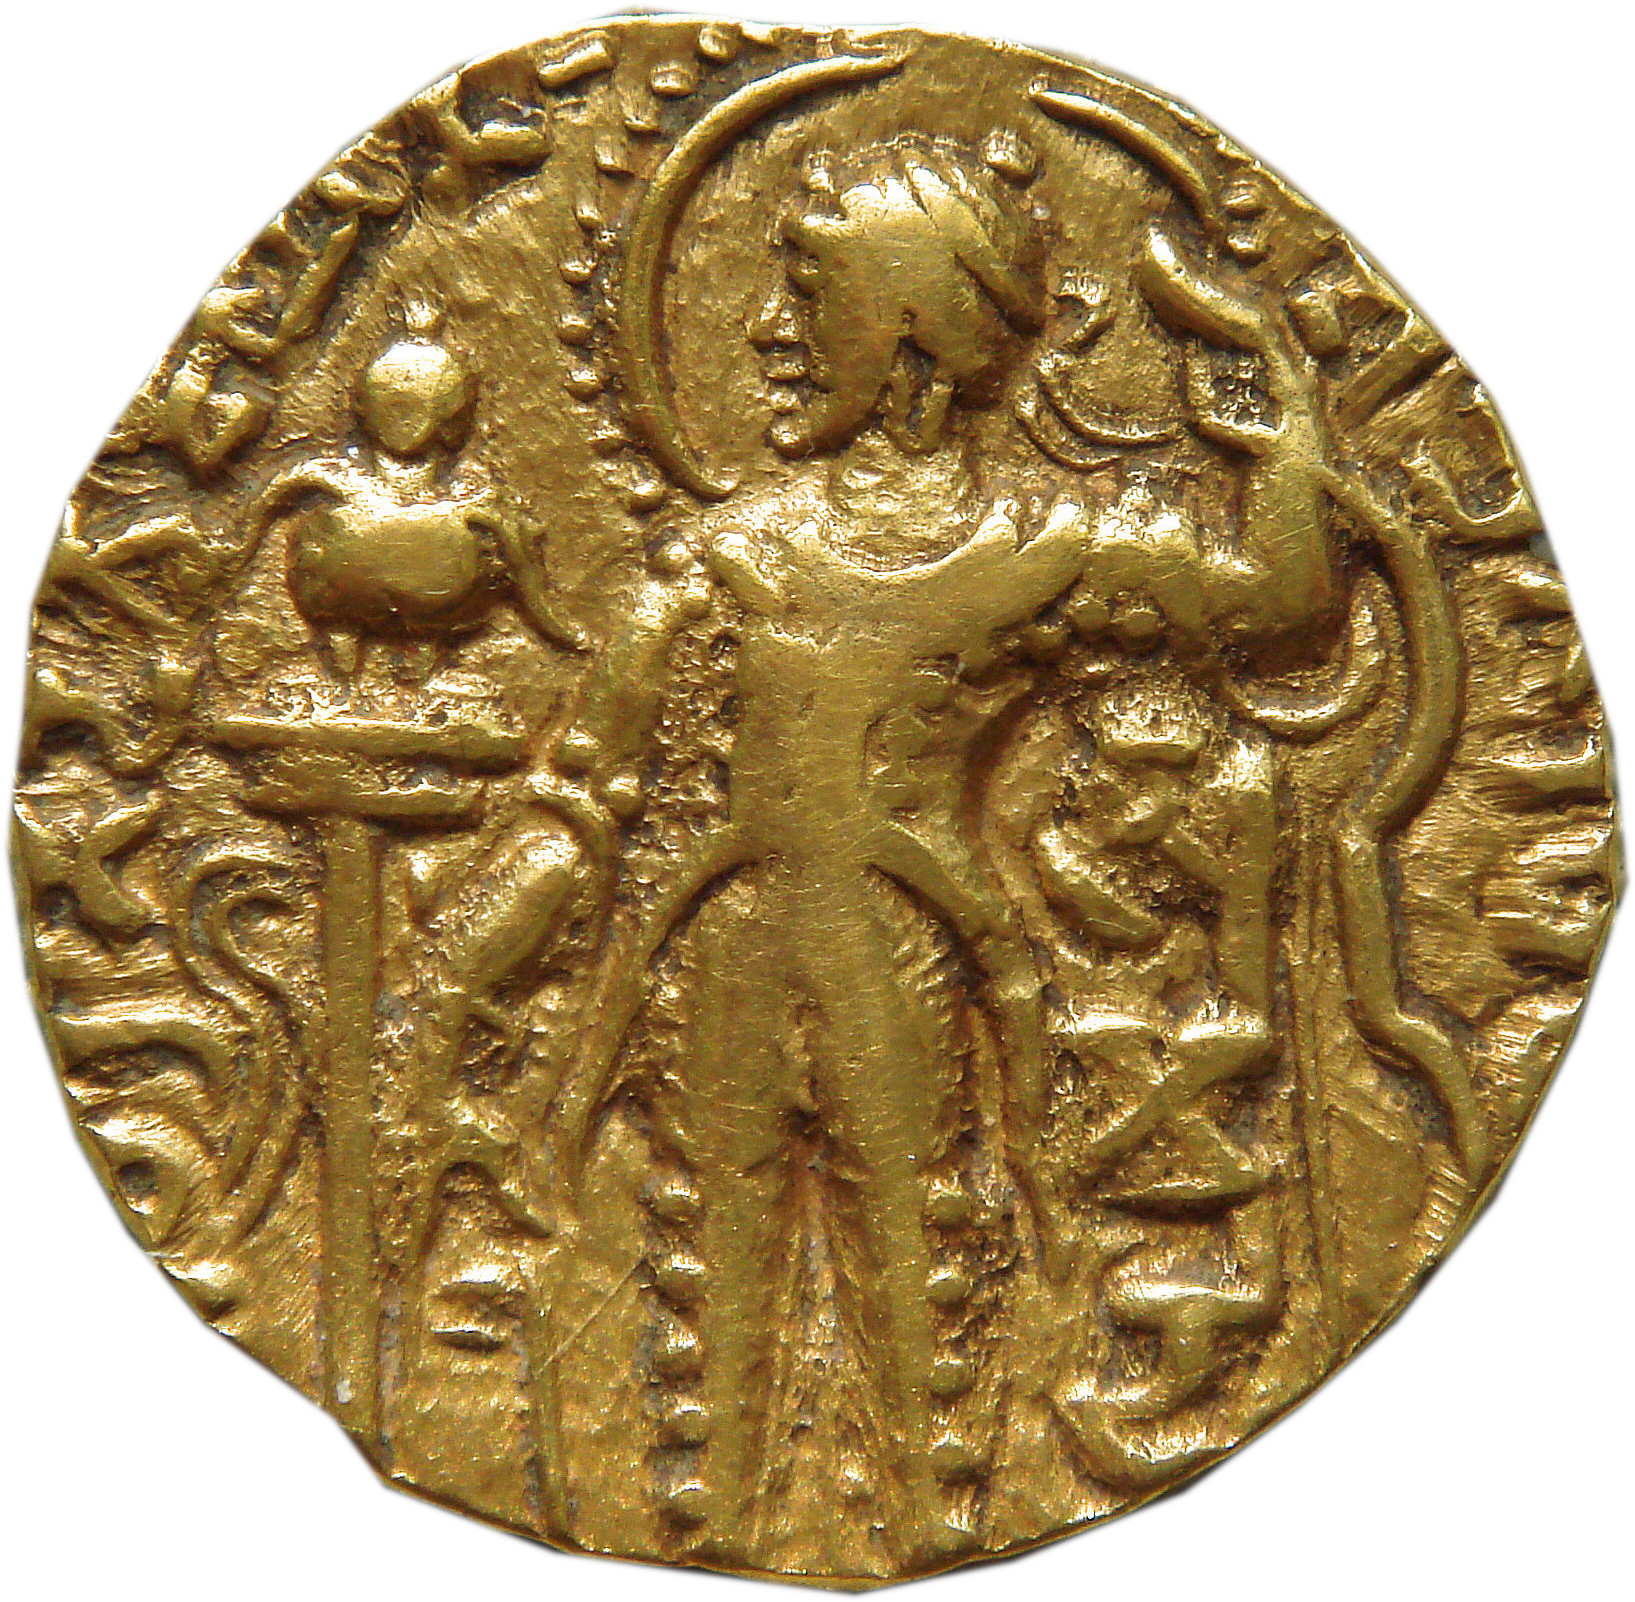 gupta gold coins